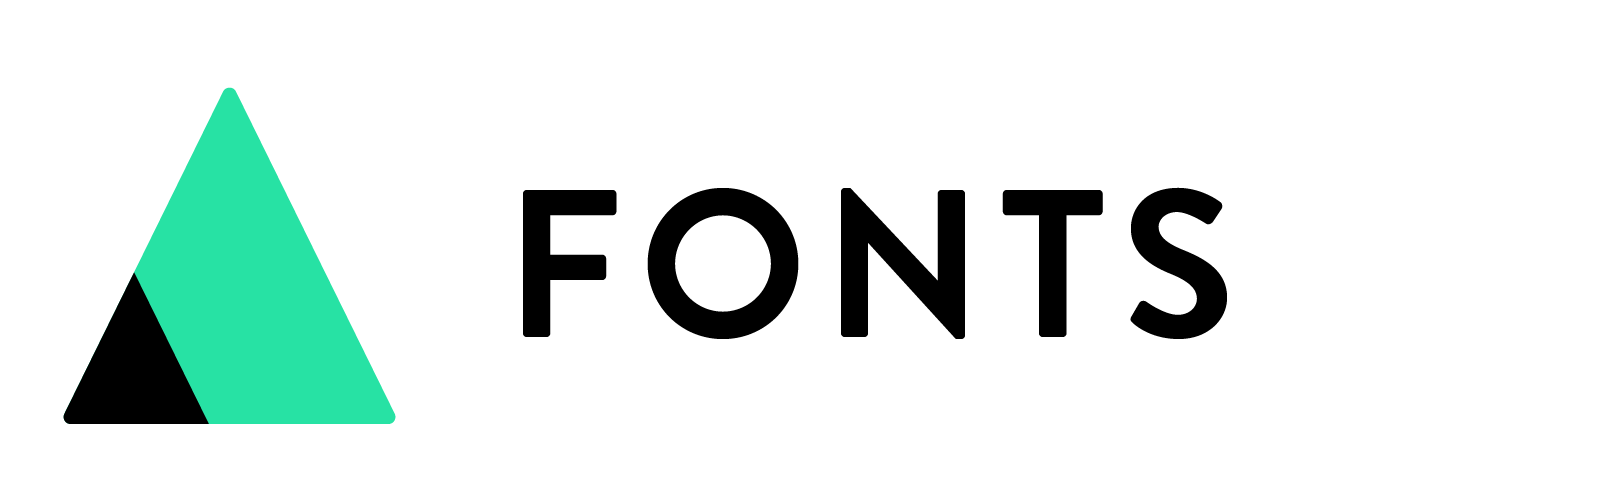 Shaped Fonts